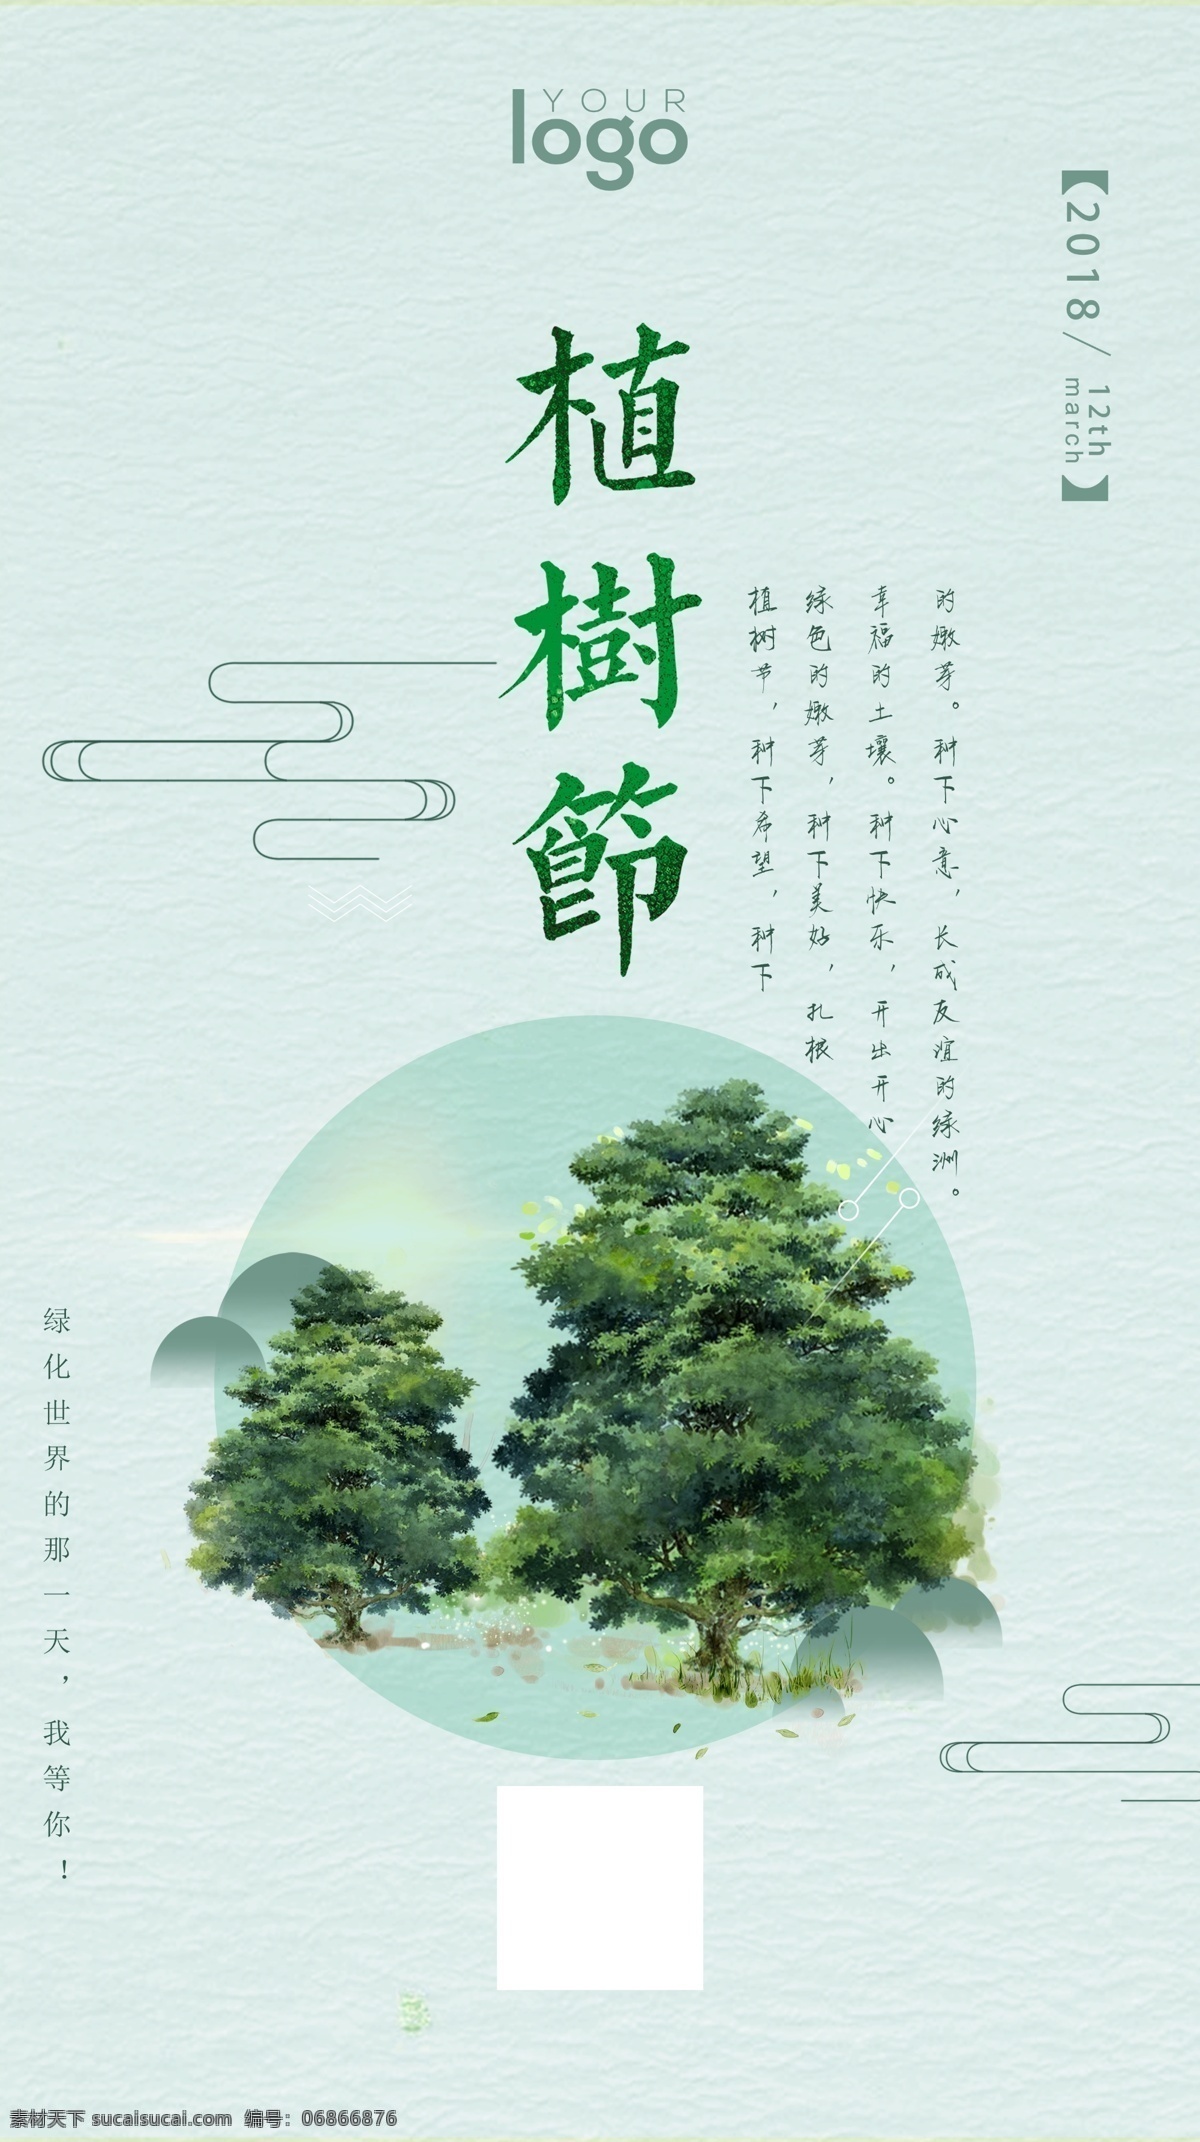 2018 手绘 风 植树节 海报 节日 宣传 时尚 环保 绿色 植树 简约 种树 节日宣传